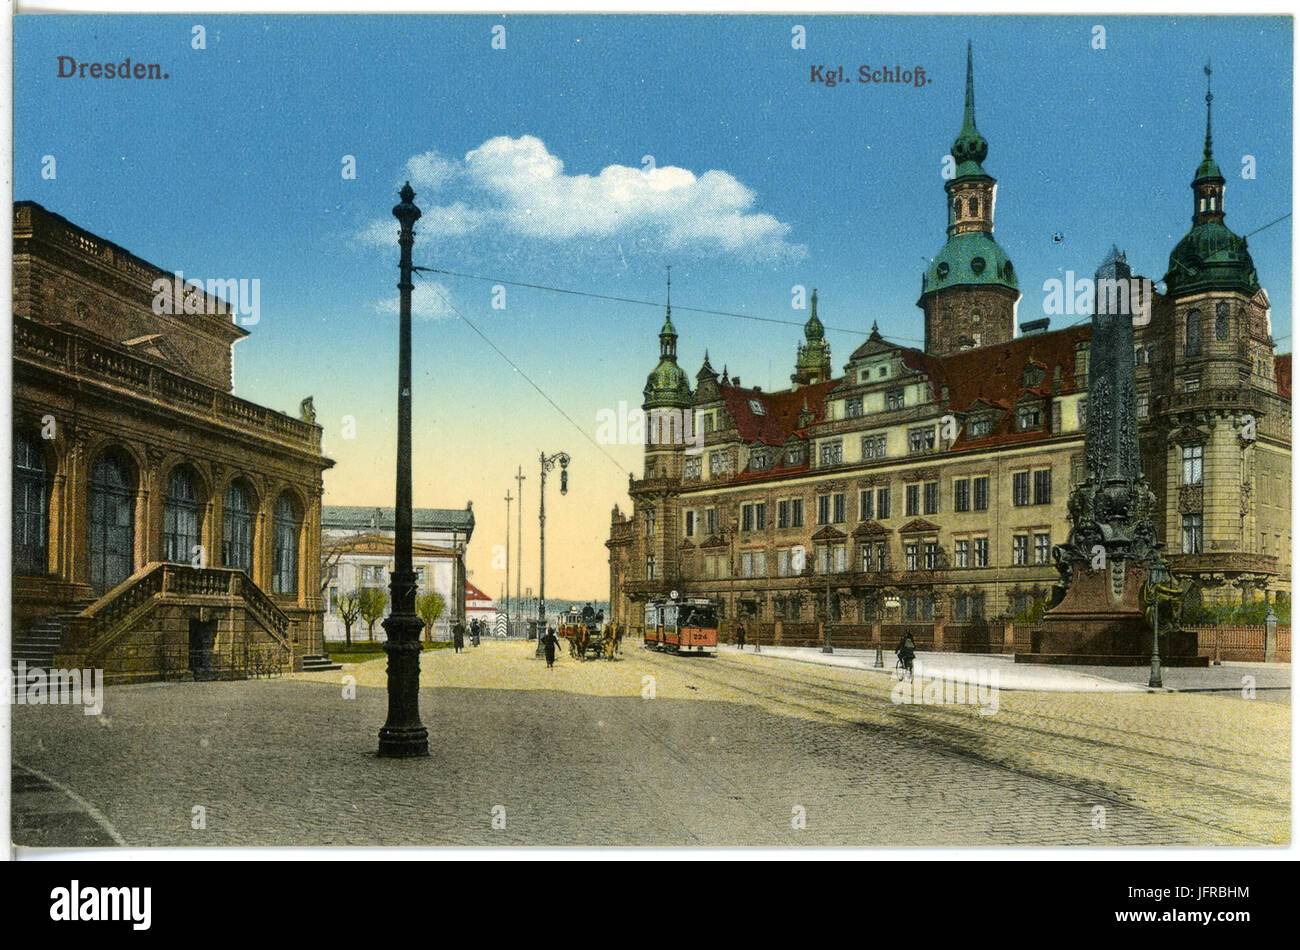 18711-Dresden-1915-Königliches Schloß mit Straßenbahn-Brück & Sohn Kunstverlag Stock Photo